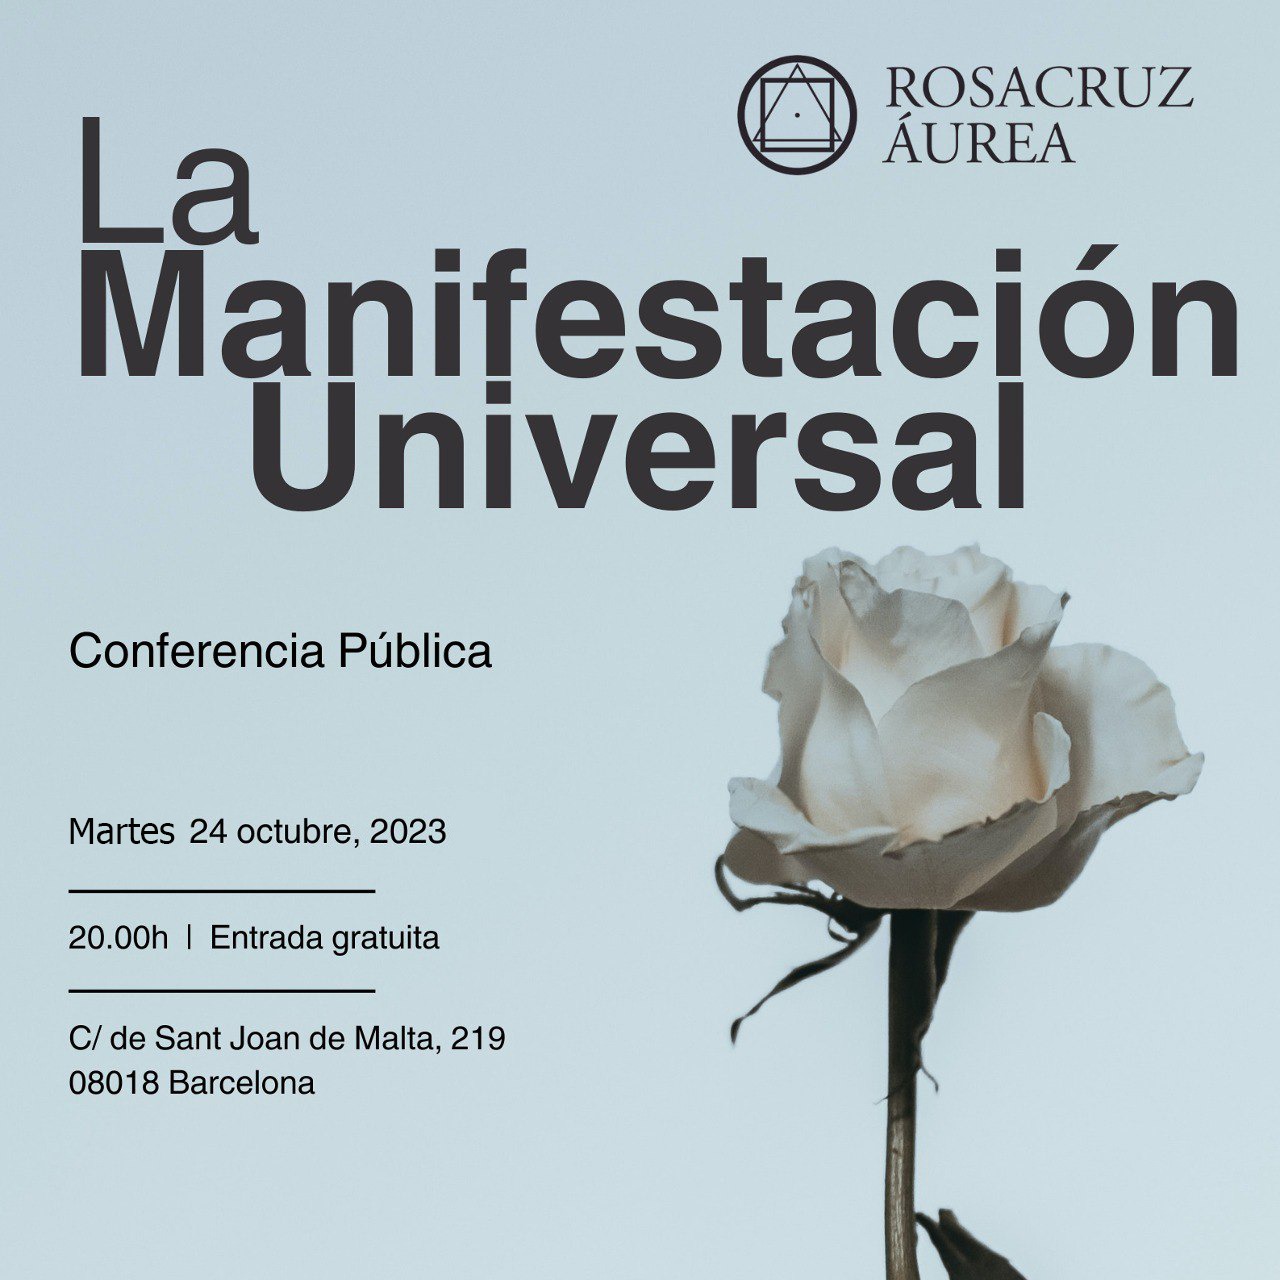 Conferencia Pública: La Manifestación Universal